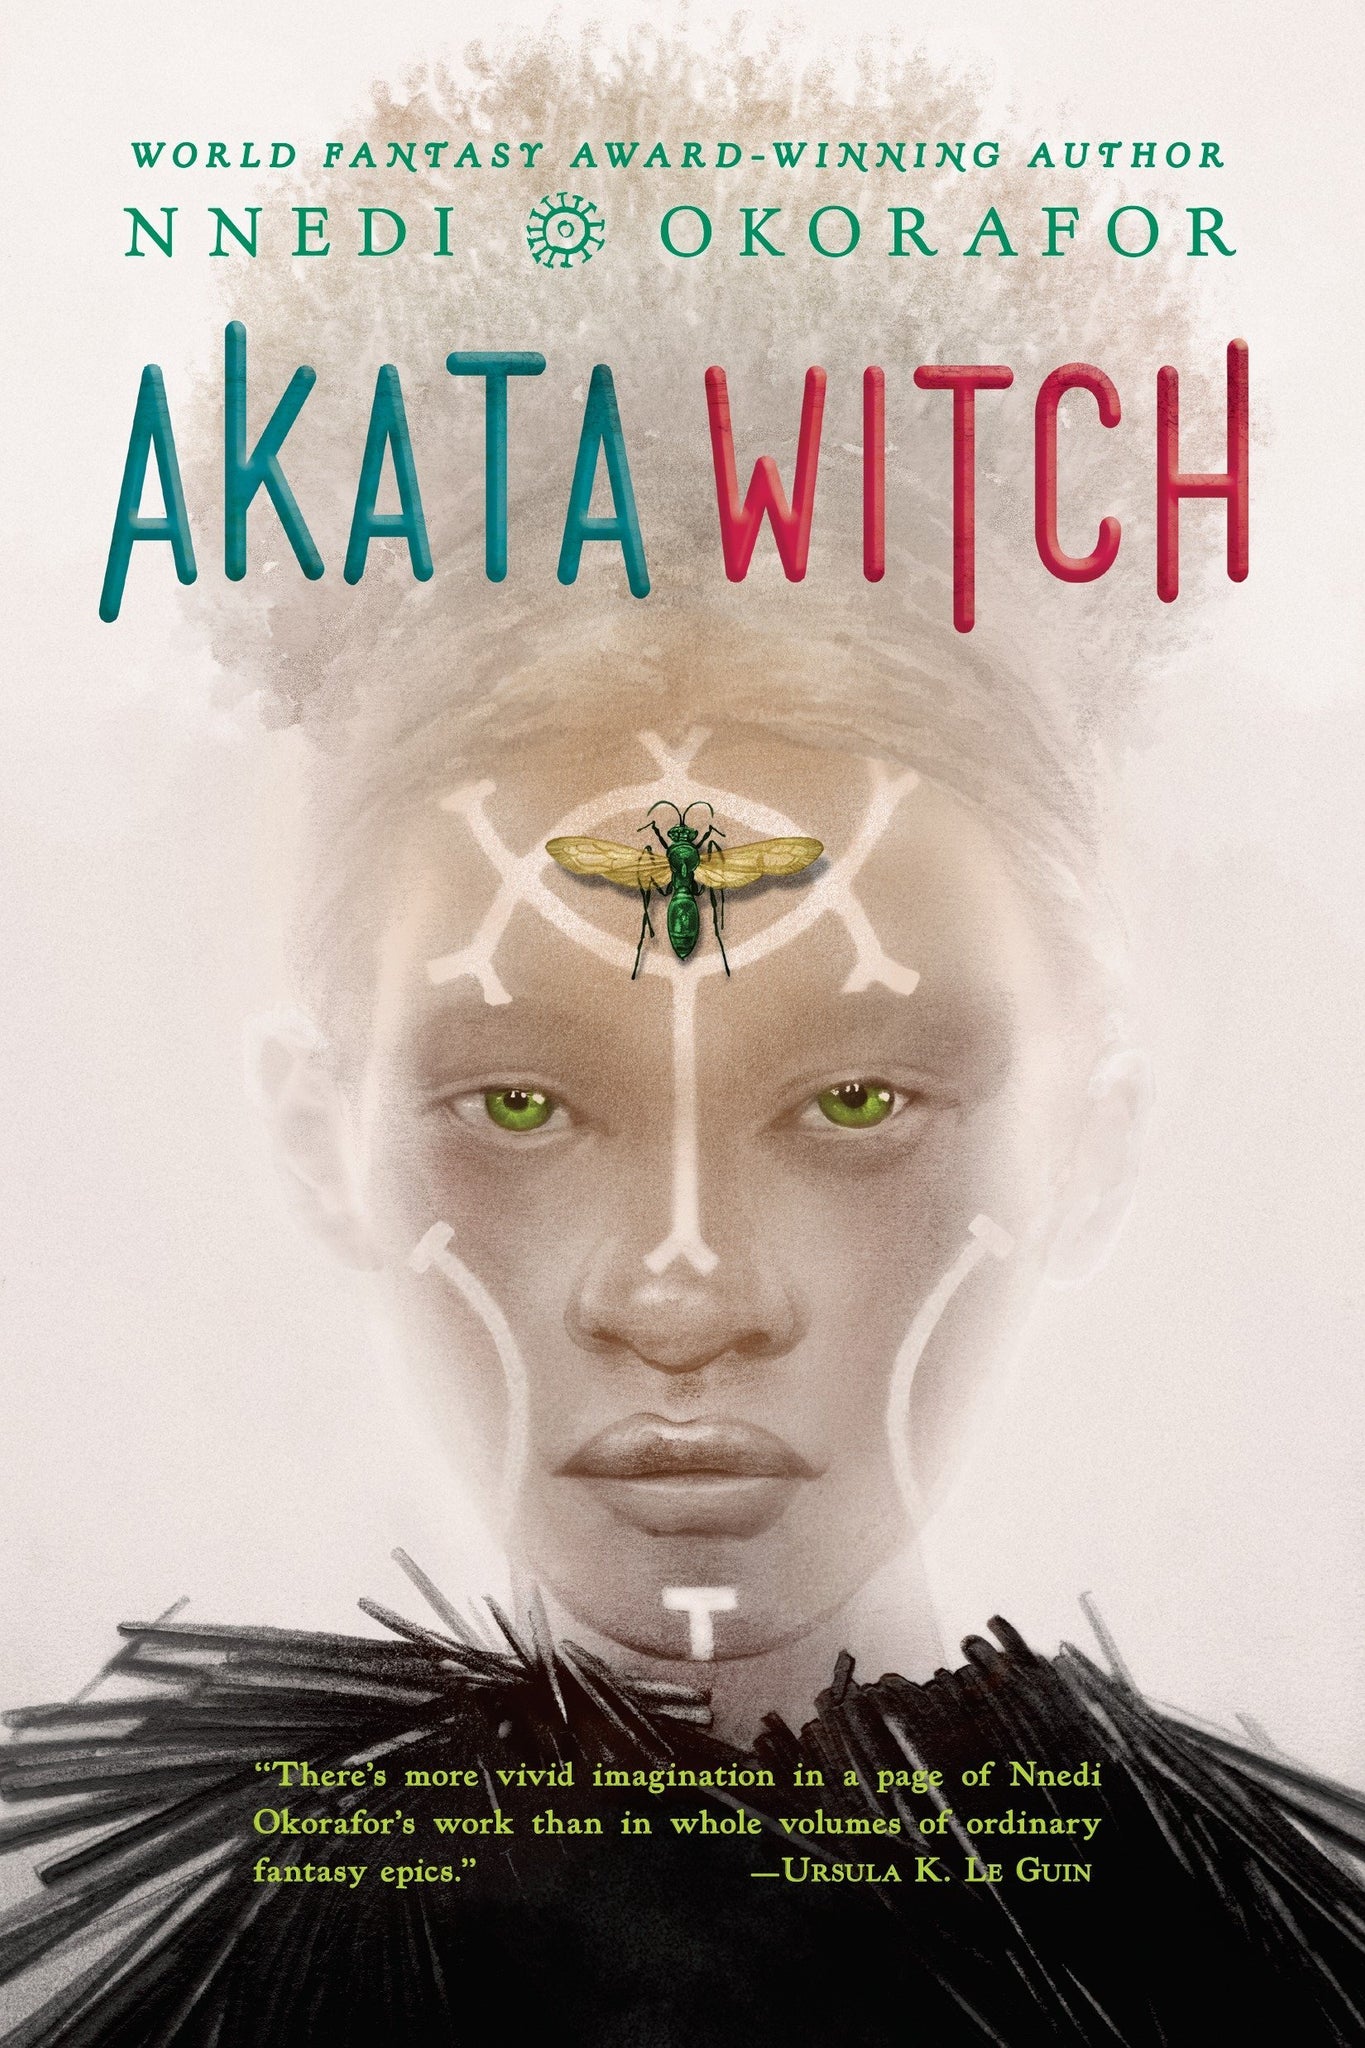 Akata Witch by Nnedi Okorafor - tpbk